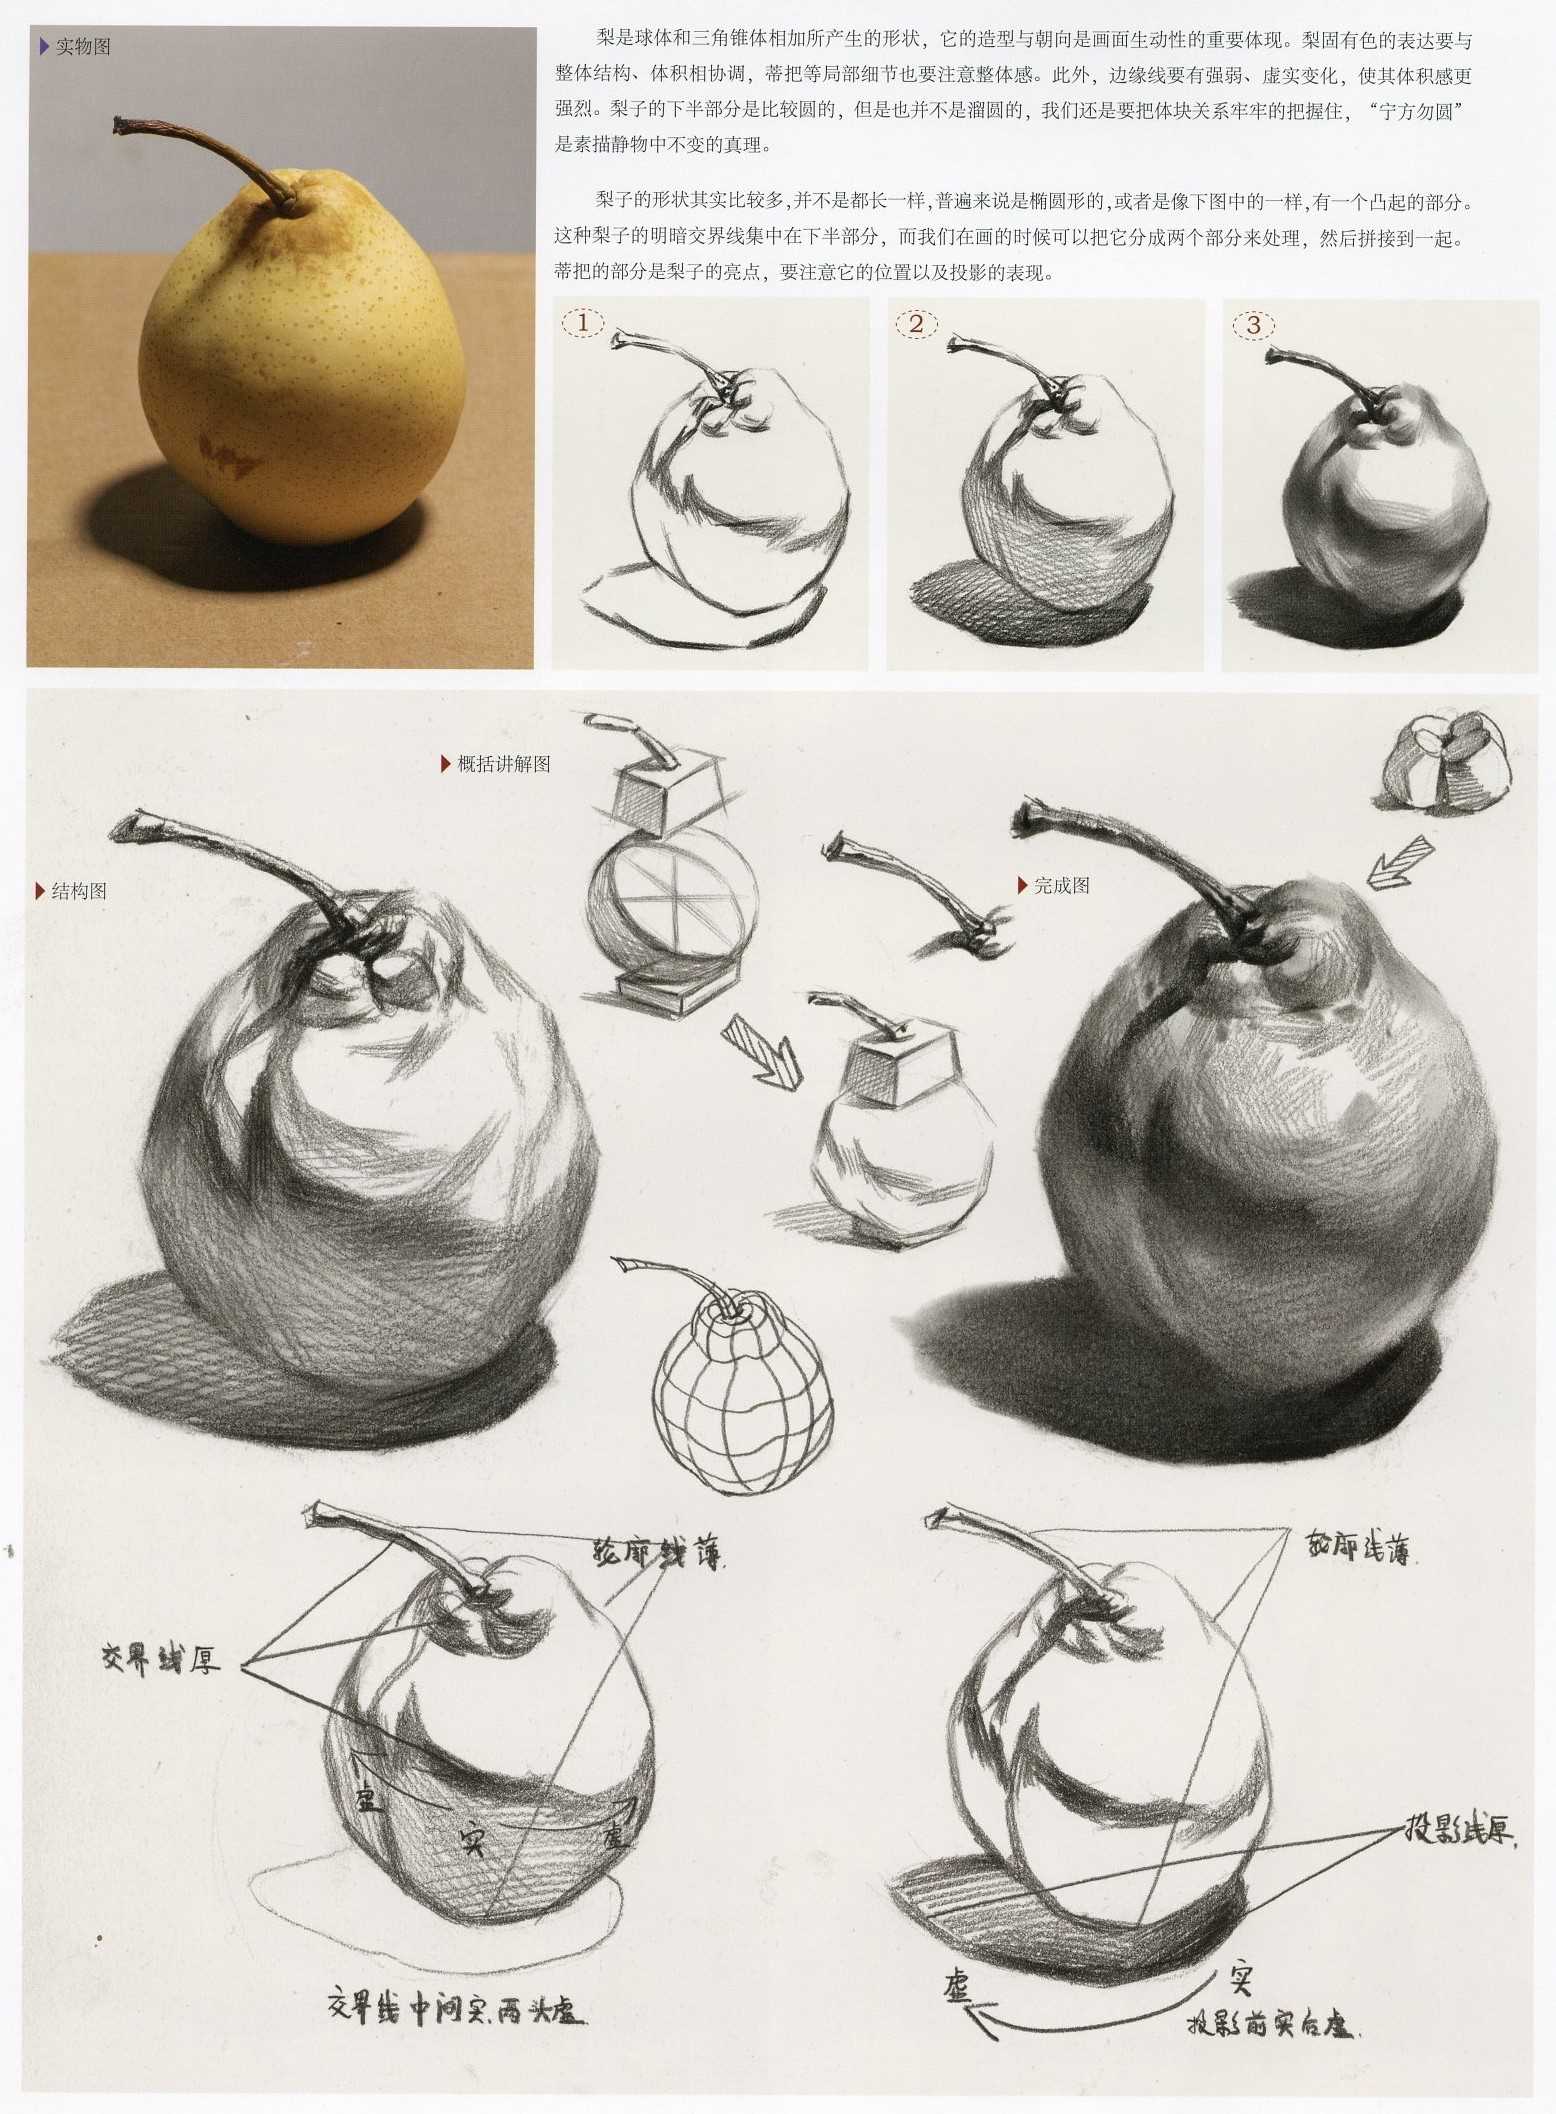 素描梨子的画法解析图 素描梨子的画法